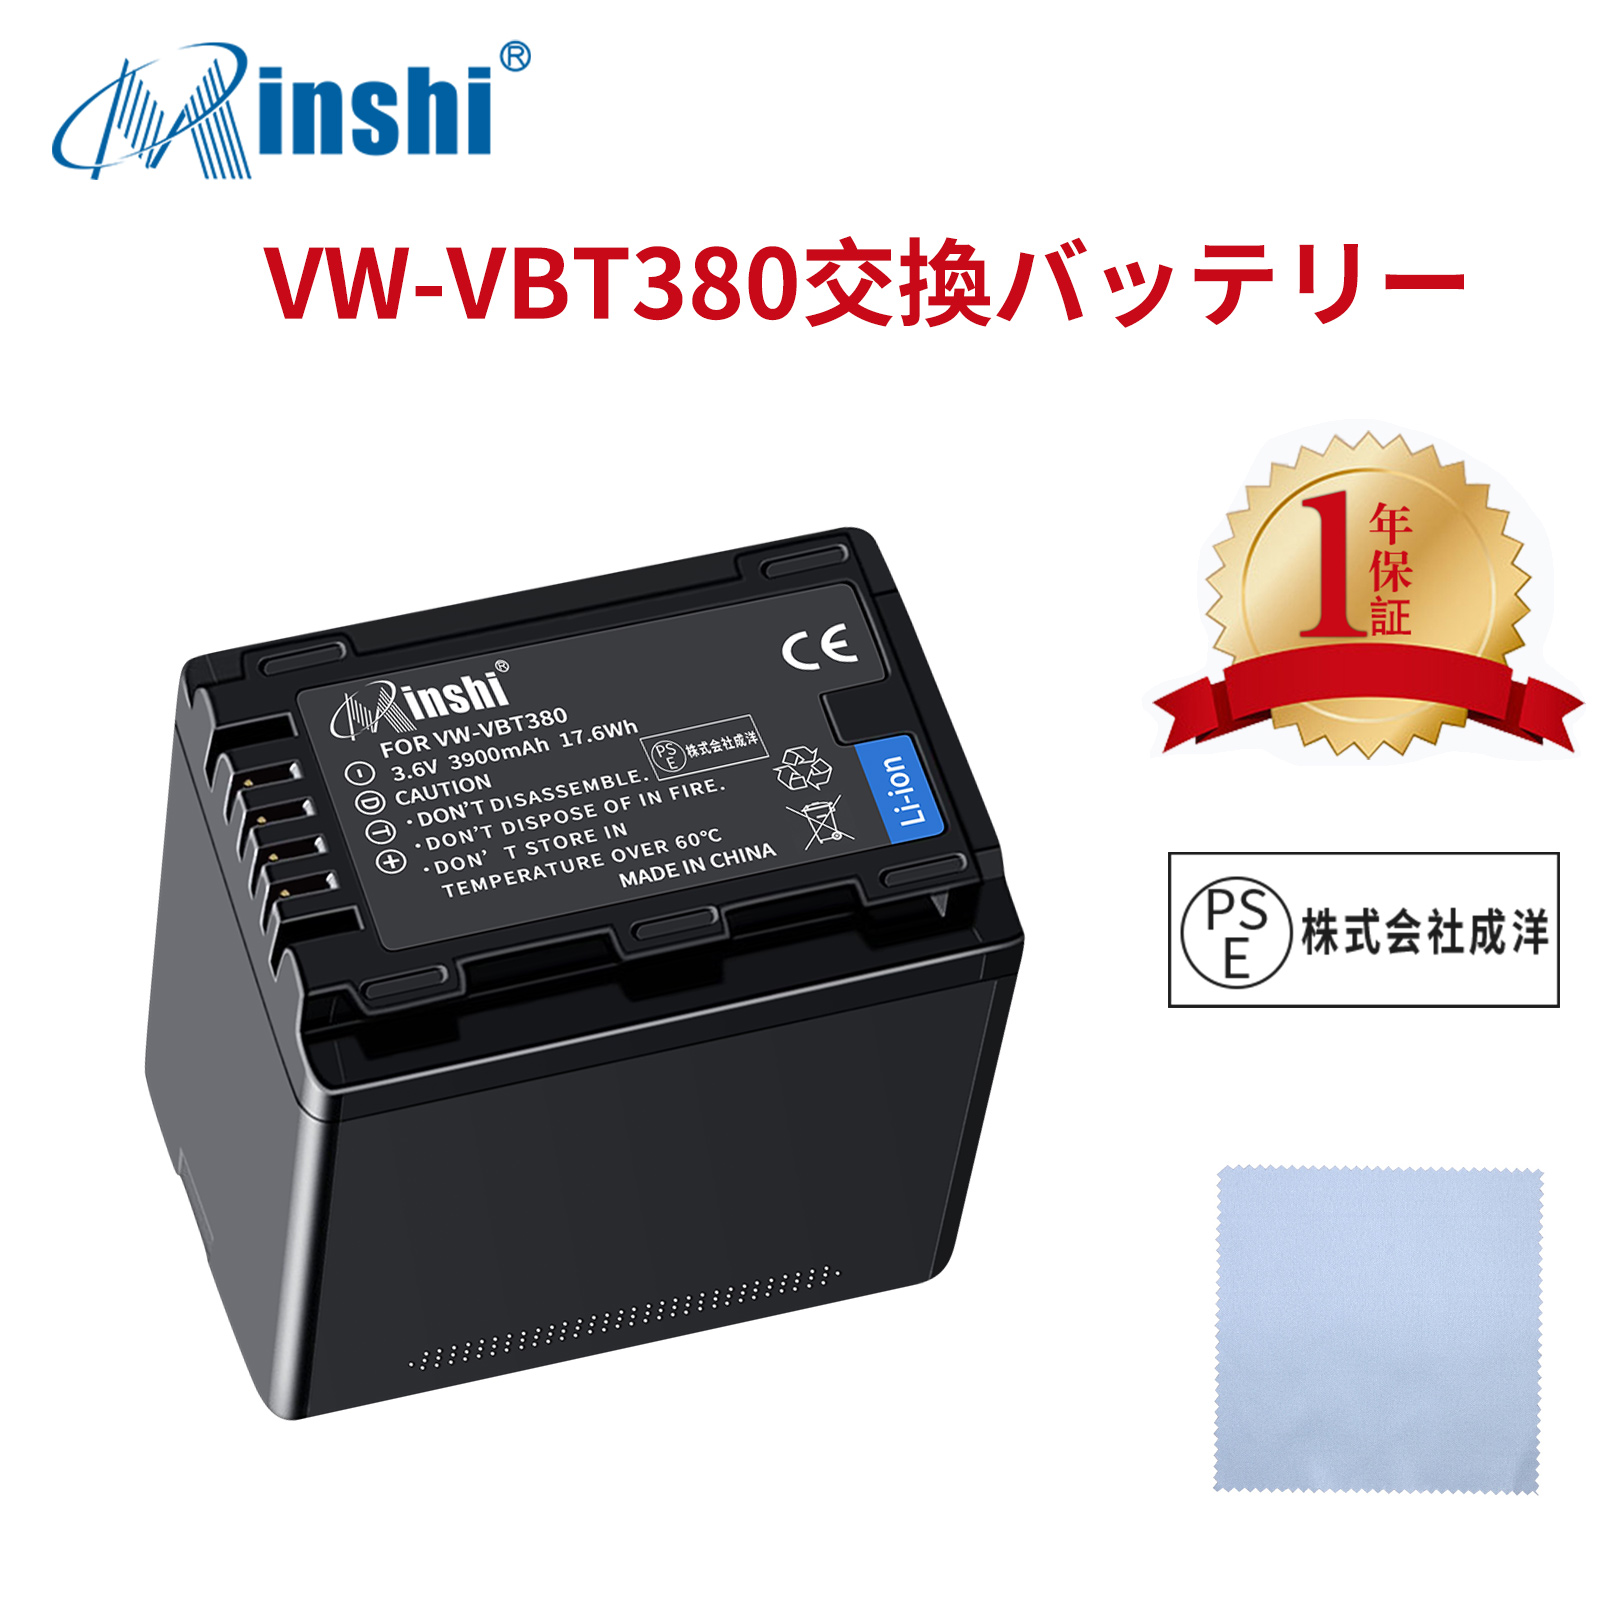 【クロス付き】 minshi Panasonic VW-VBT380 対応 HC-W580M VW-VBT380 3900mAh PSE認定済 高品質交換用バッテリー